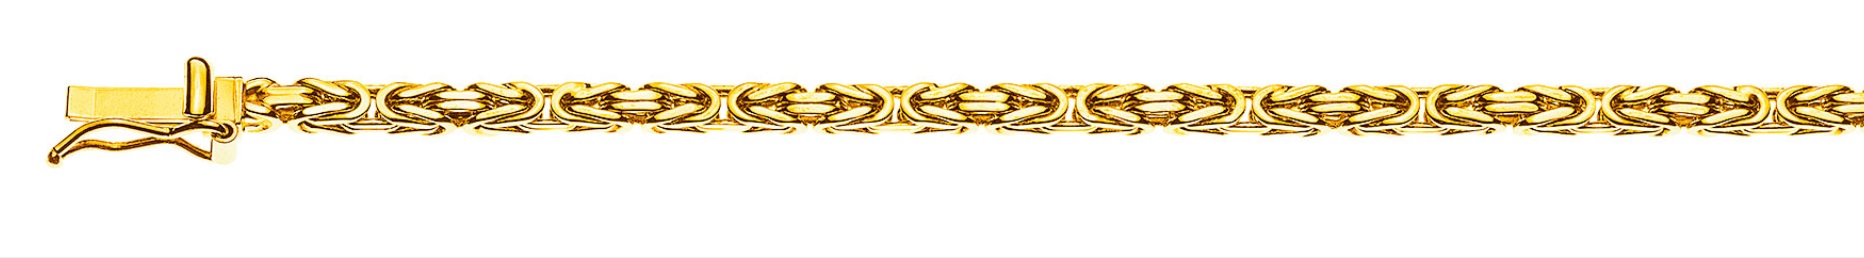 AURONOS Prestige Halskette Gelbgold 18K Königskette 60cm 2.5mm